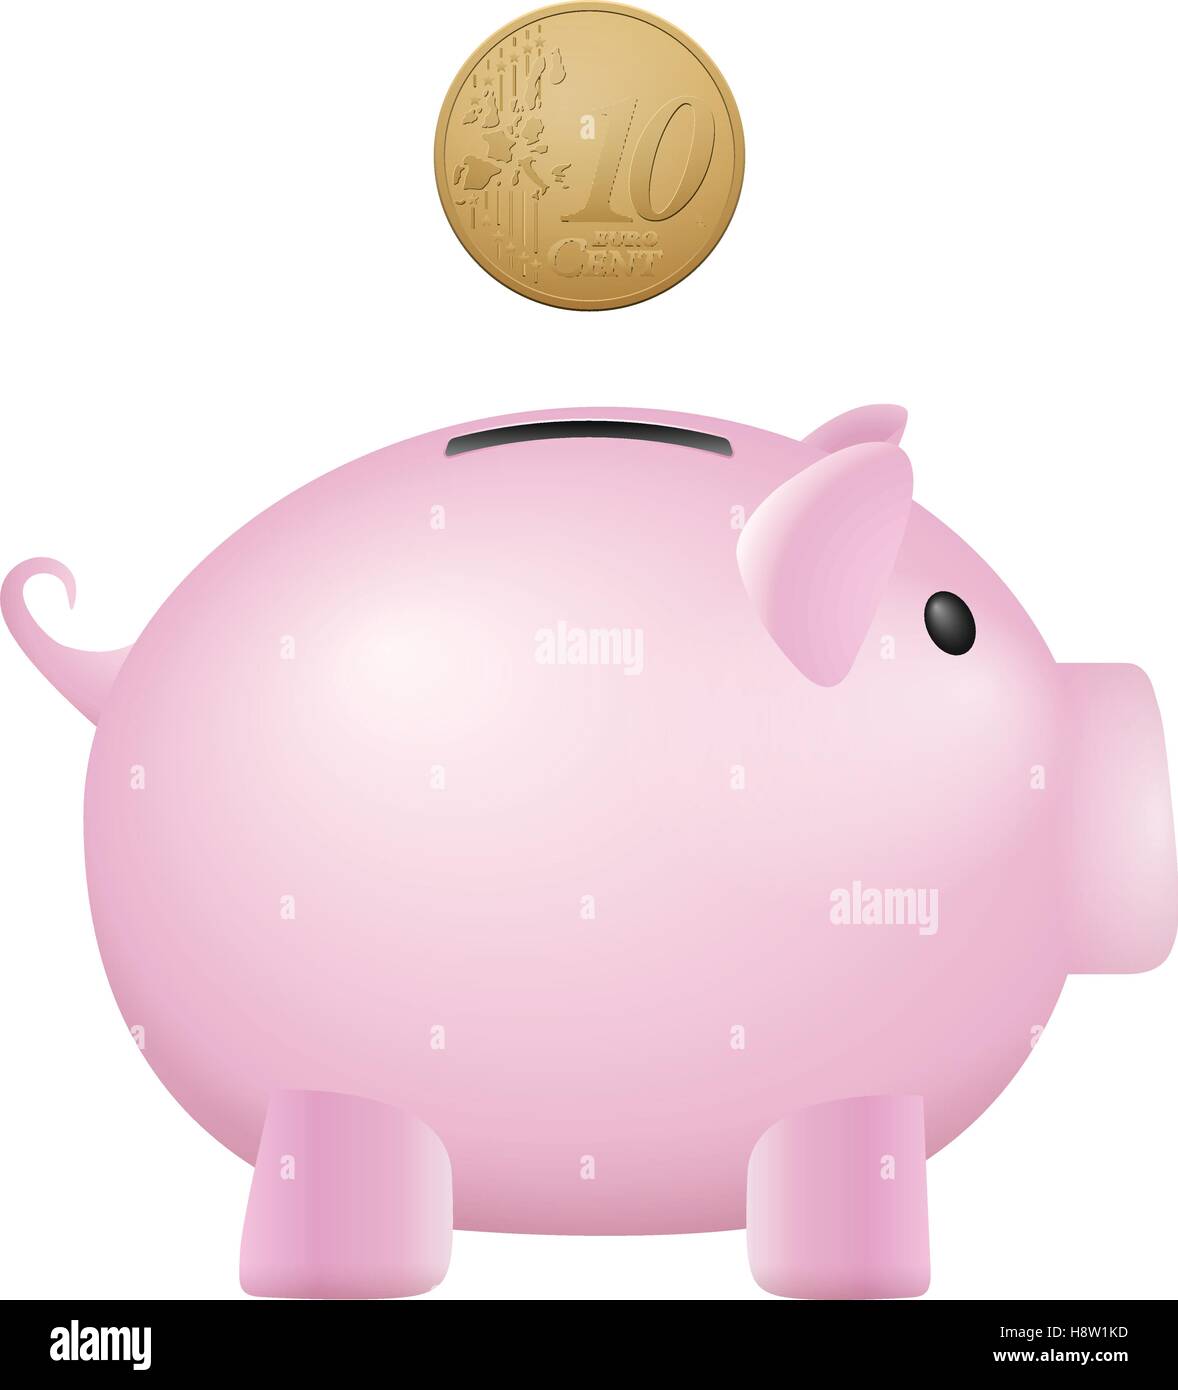 Piggy Bank 10 Euro-Cent auf einem weißen Hintergrund. Stock Vektor